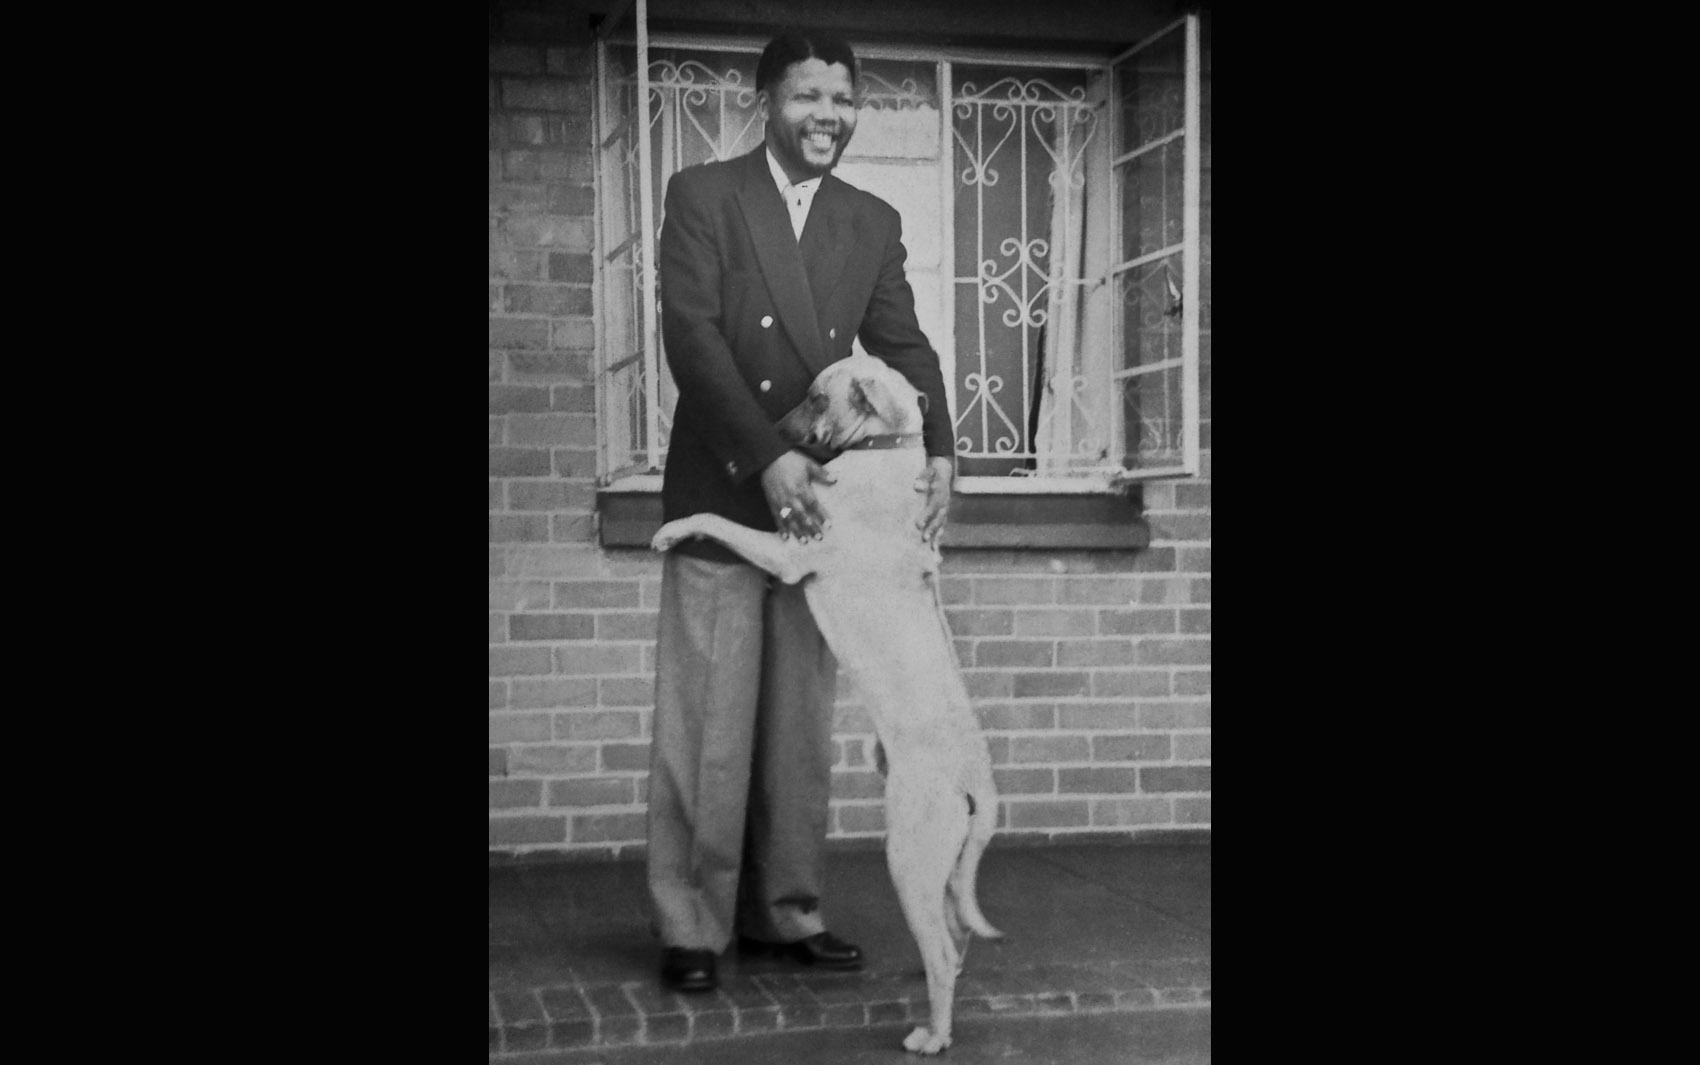 Foto de arquivo sem data atribuída mostra Nelson Mandela ainda jovem